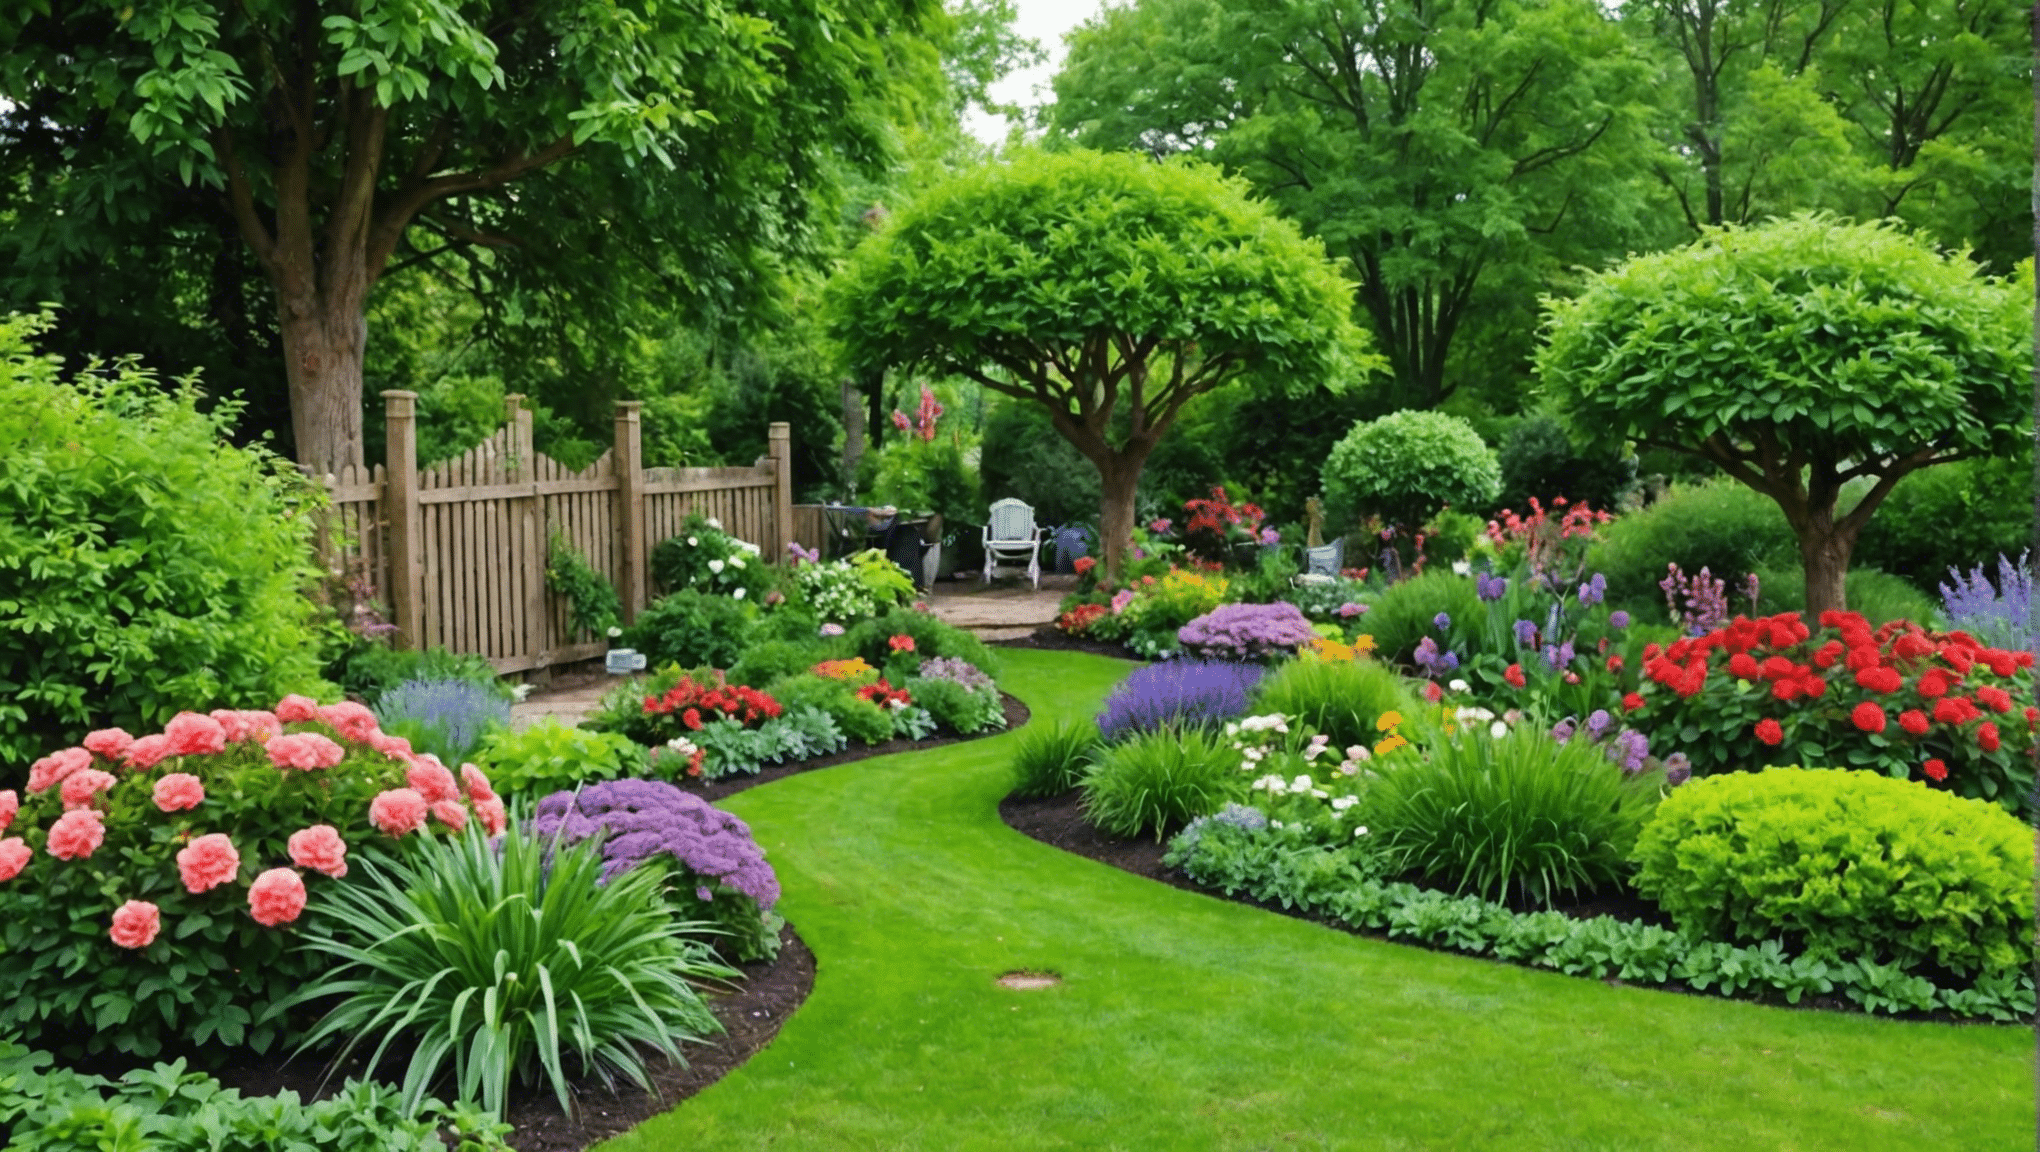 Descubra si vale la pena probar estas ideas de jardinería poco convencionales y prepárese para llevar su jardín al siguiente nivel con conceptos innovadores.